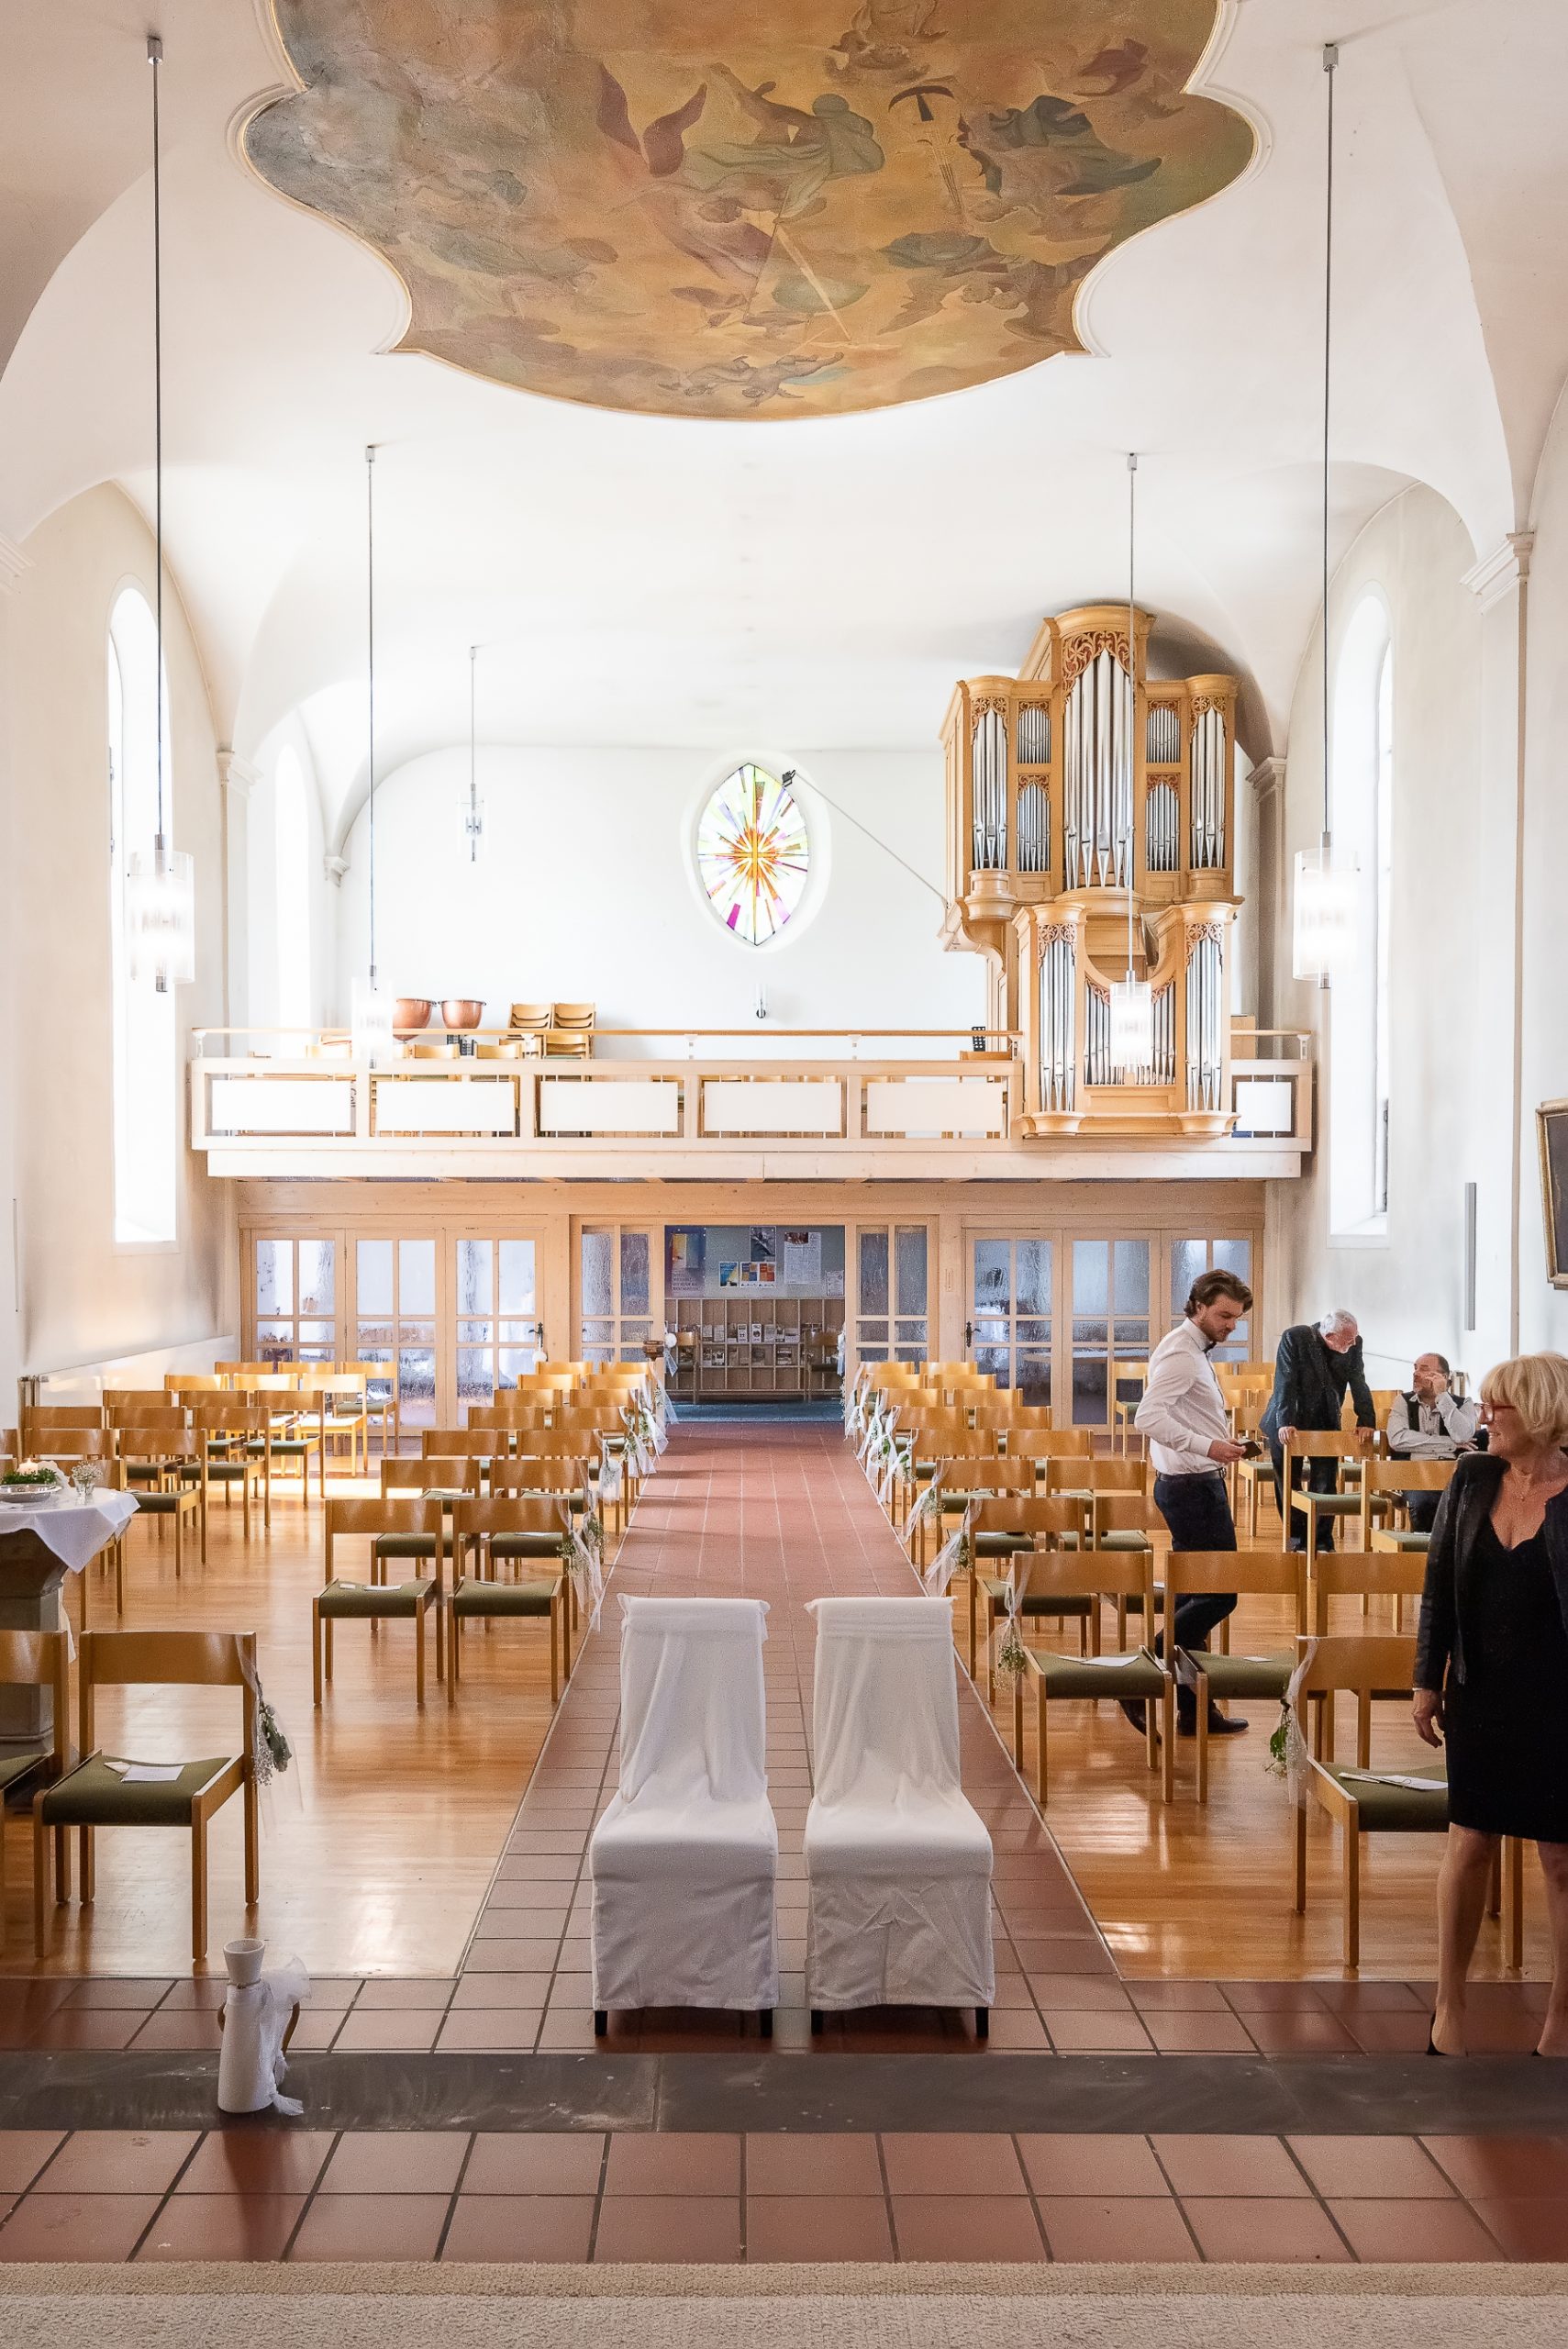 Ein Foto, das die Vorbereitungen für eine kirchliche Hochzeit in der Evangelischen Kirche in Friesenheim zeigt. Das Bild fängt den Innenraum der Kirche ein, der für die Trauungszeremonie geschmückt wurde. Im Hintergrund sind die Kirchenbänke und der Altar zu sehen.